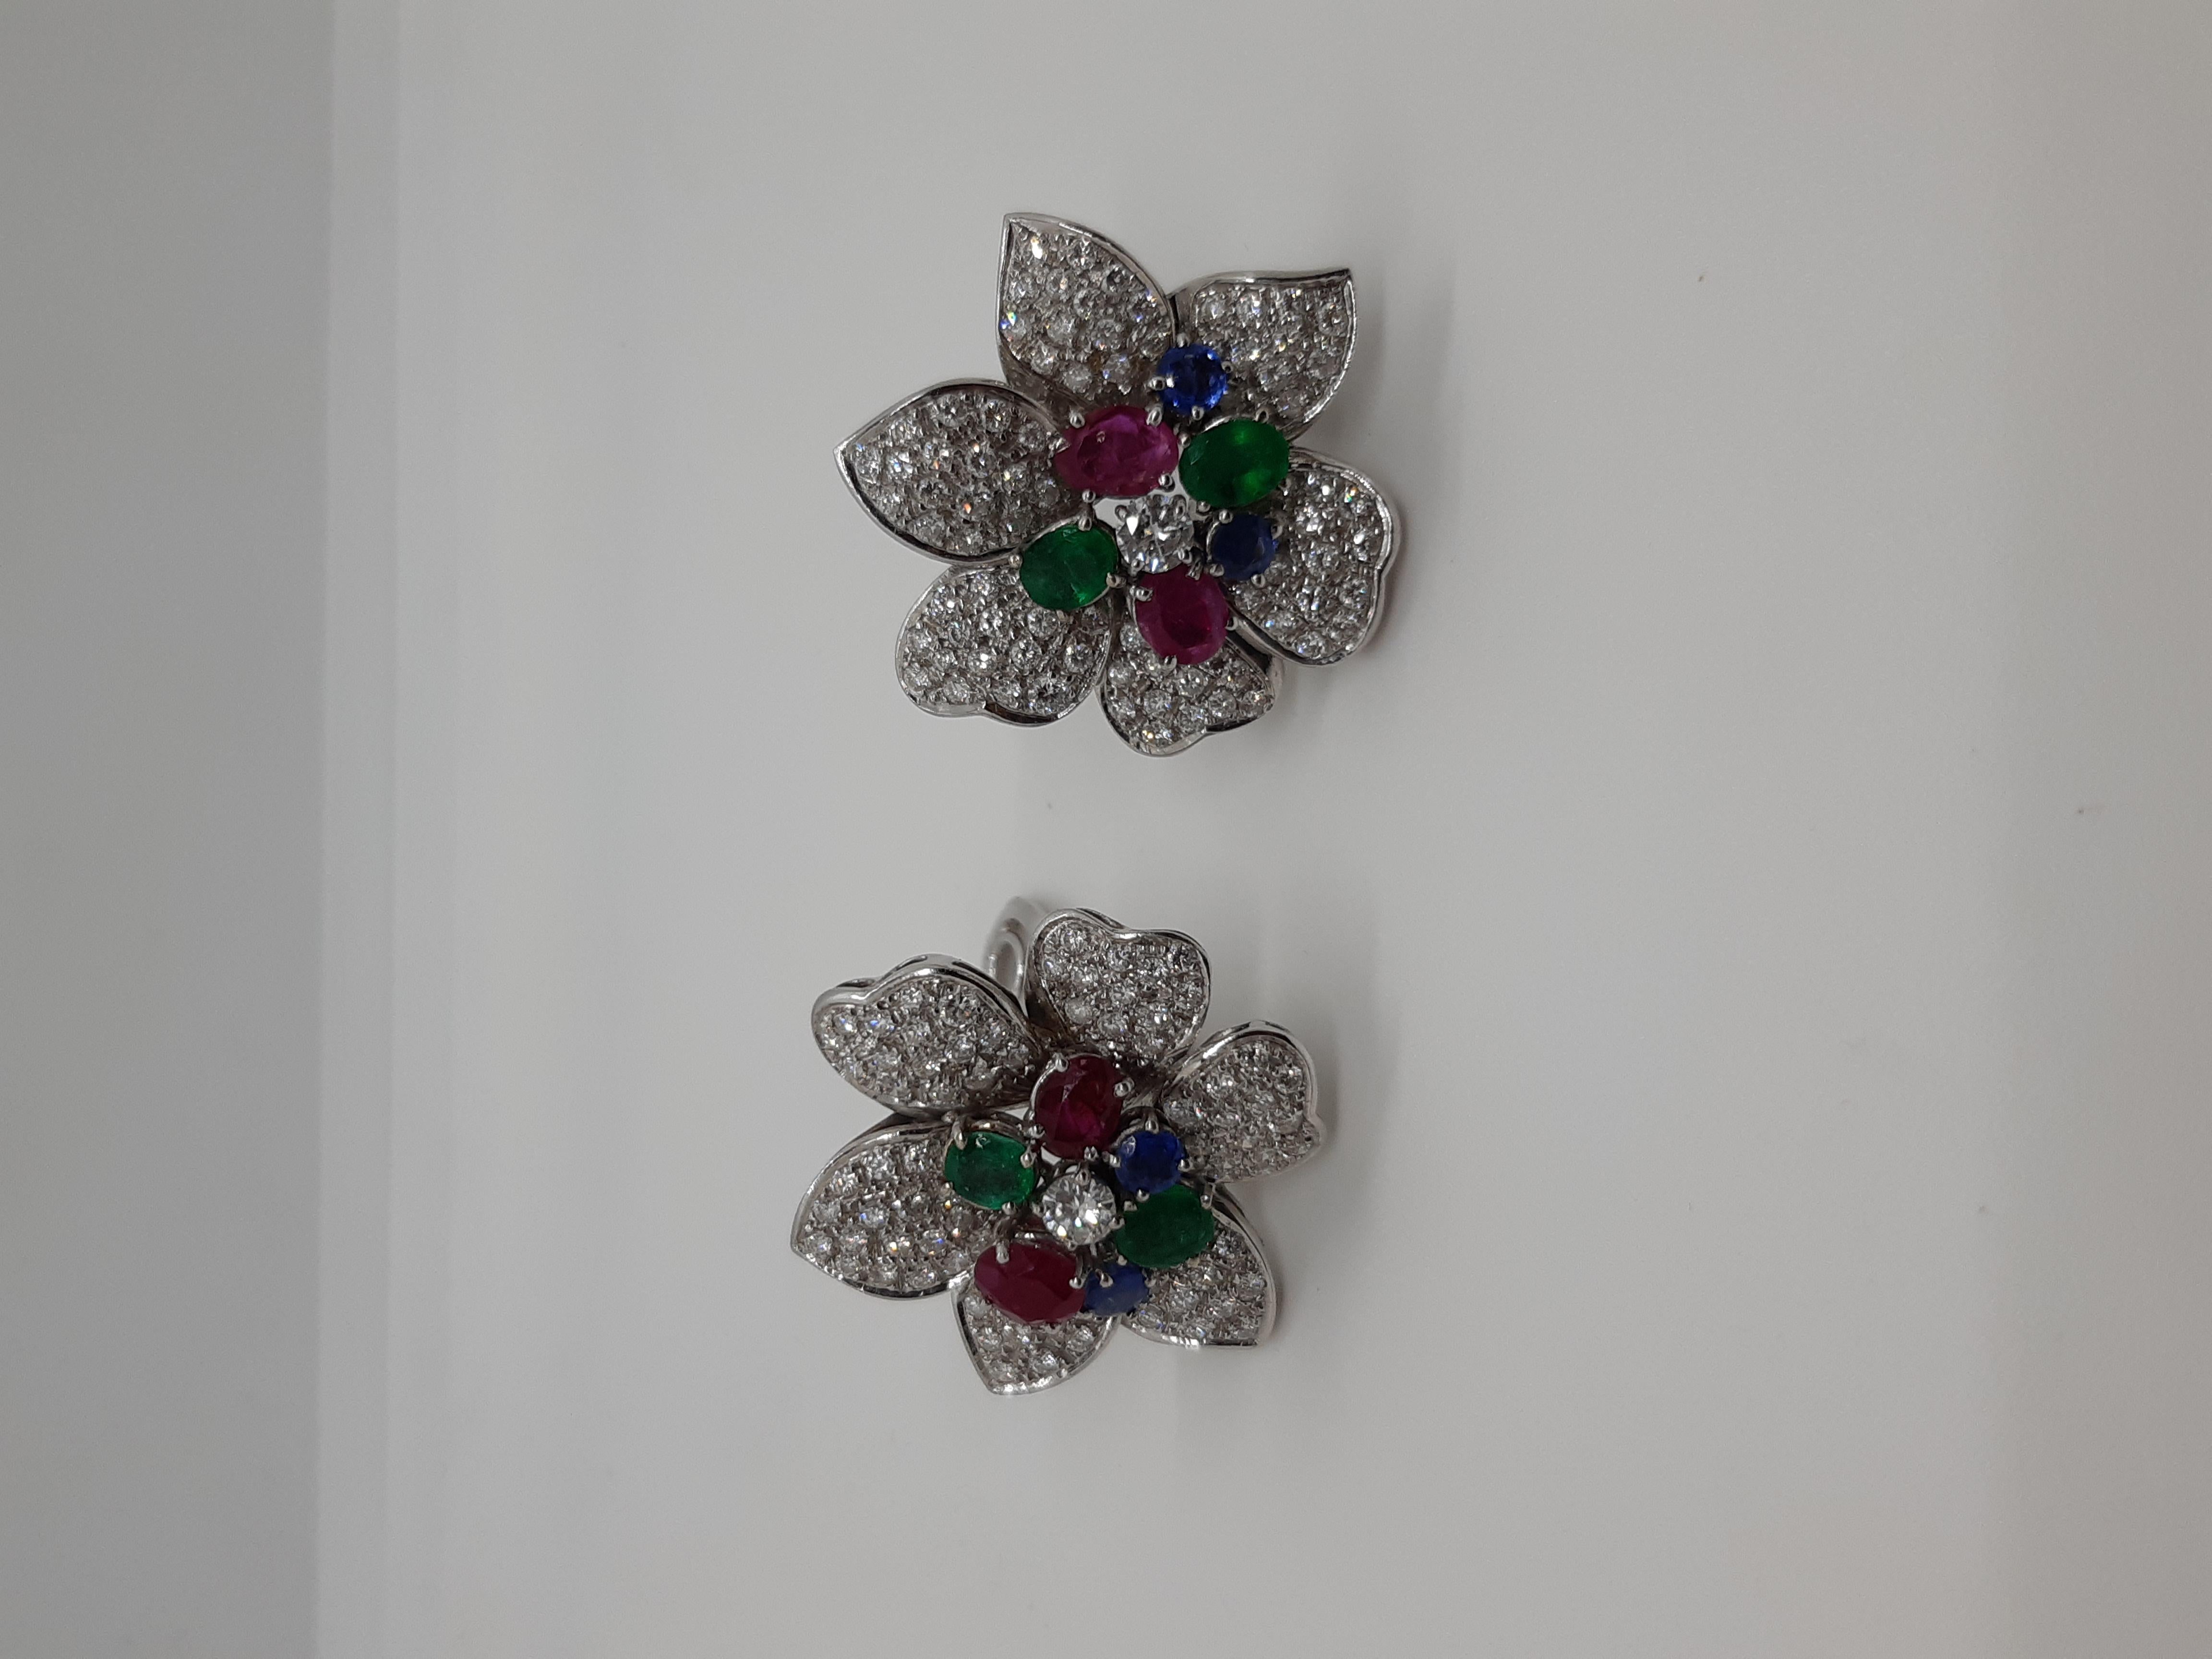 boucles d'oreilles fleurs des années 1960 or blanc 18 kt avec diamants ronds de taille brillant ct 2,5  saphirs, émeraudes et rubis de taille ovale.
poids 26 grammes